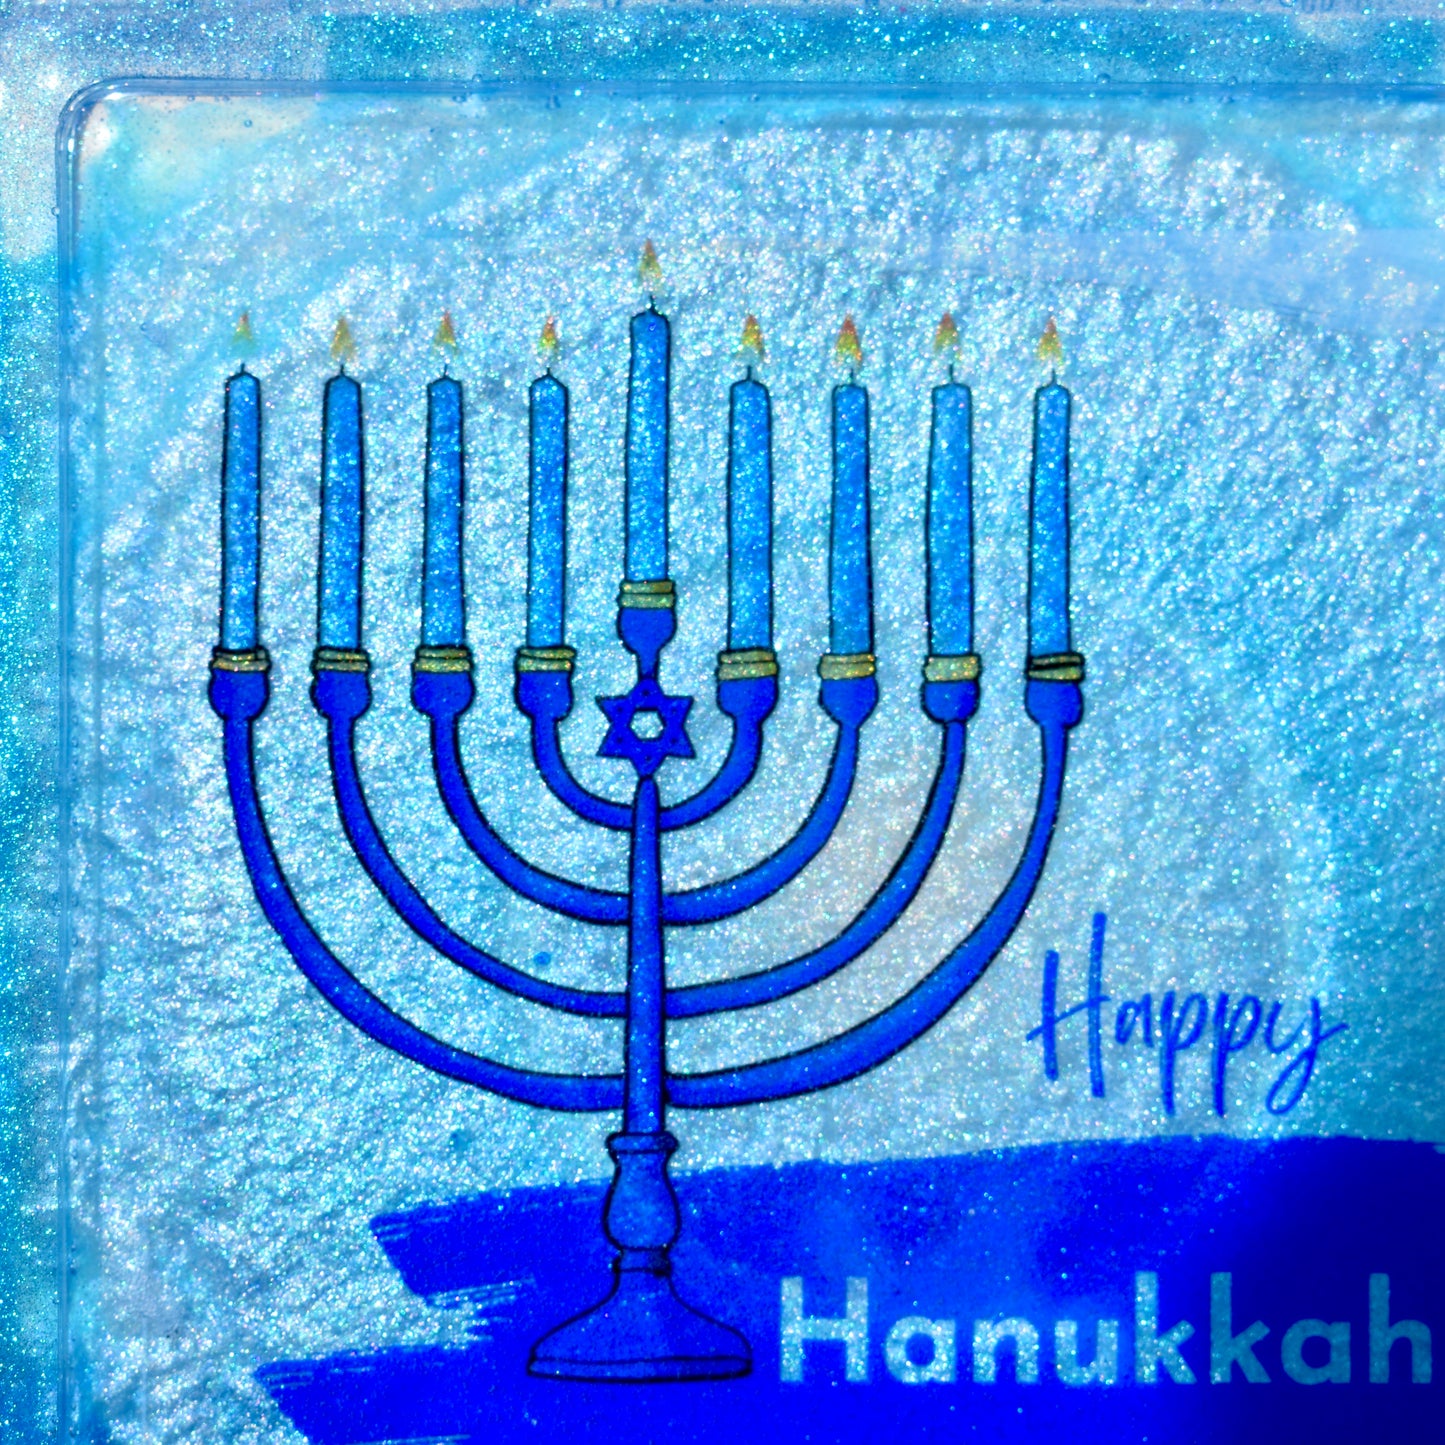 Hanukkah Themed Coasters • Hanukkah Menorah Coasters • Jewish Coasters